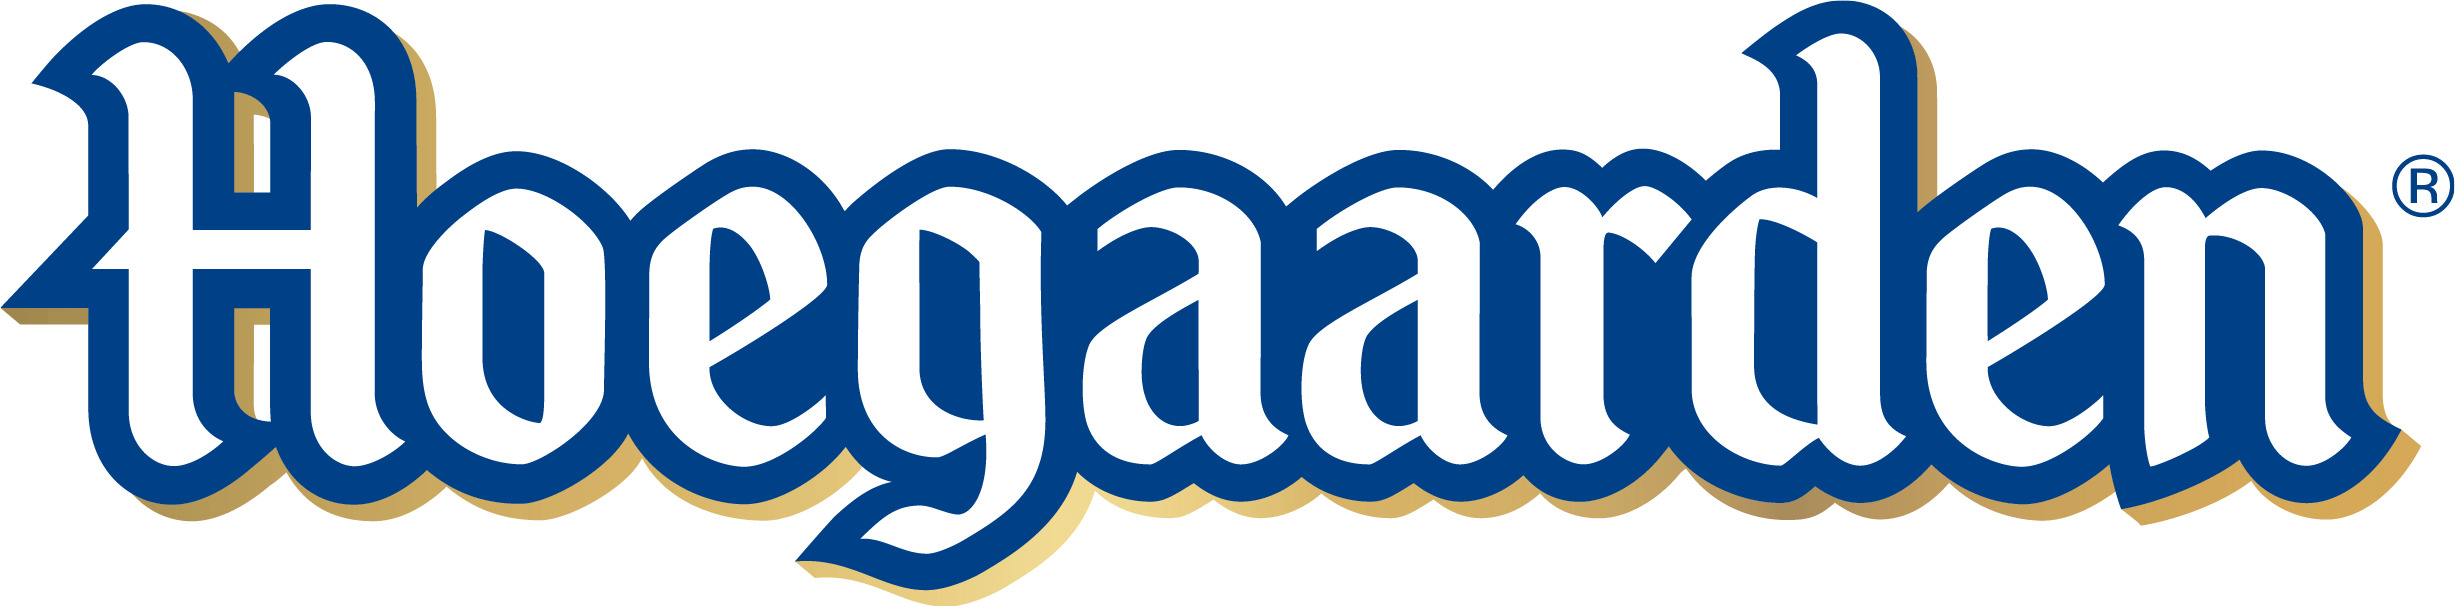 Hoegaarden Beer Logo icons